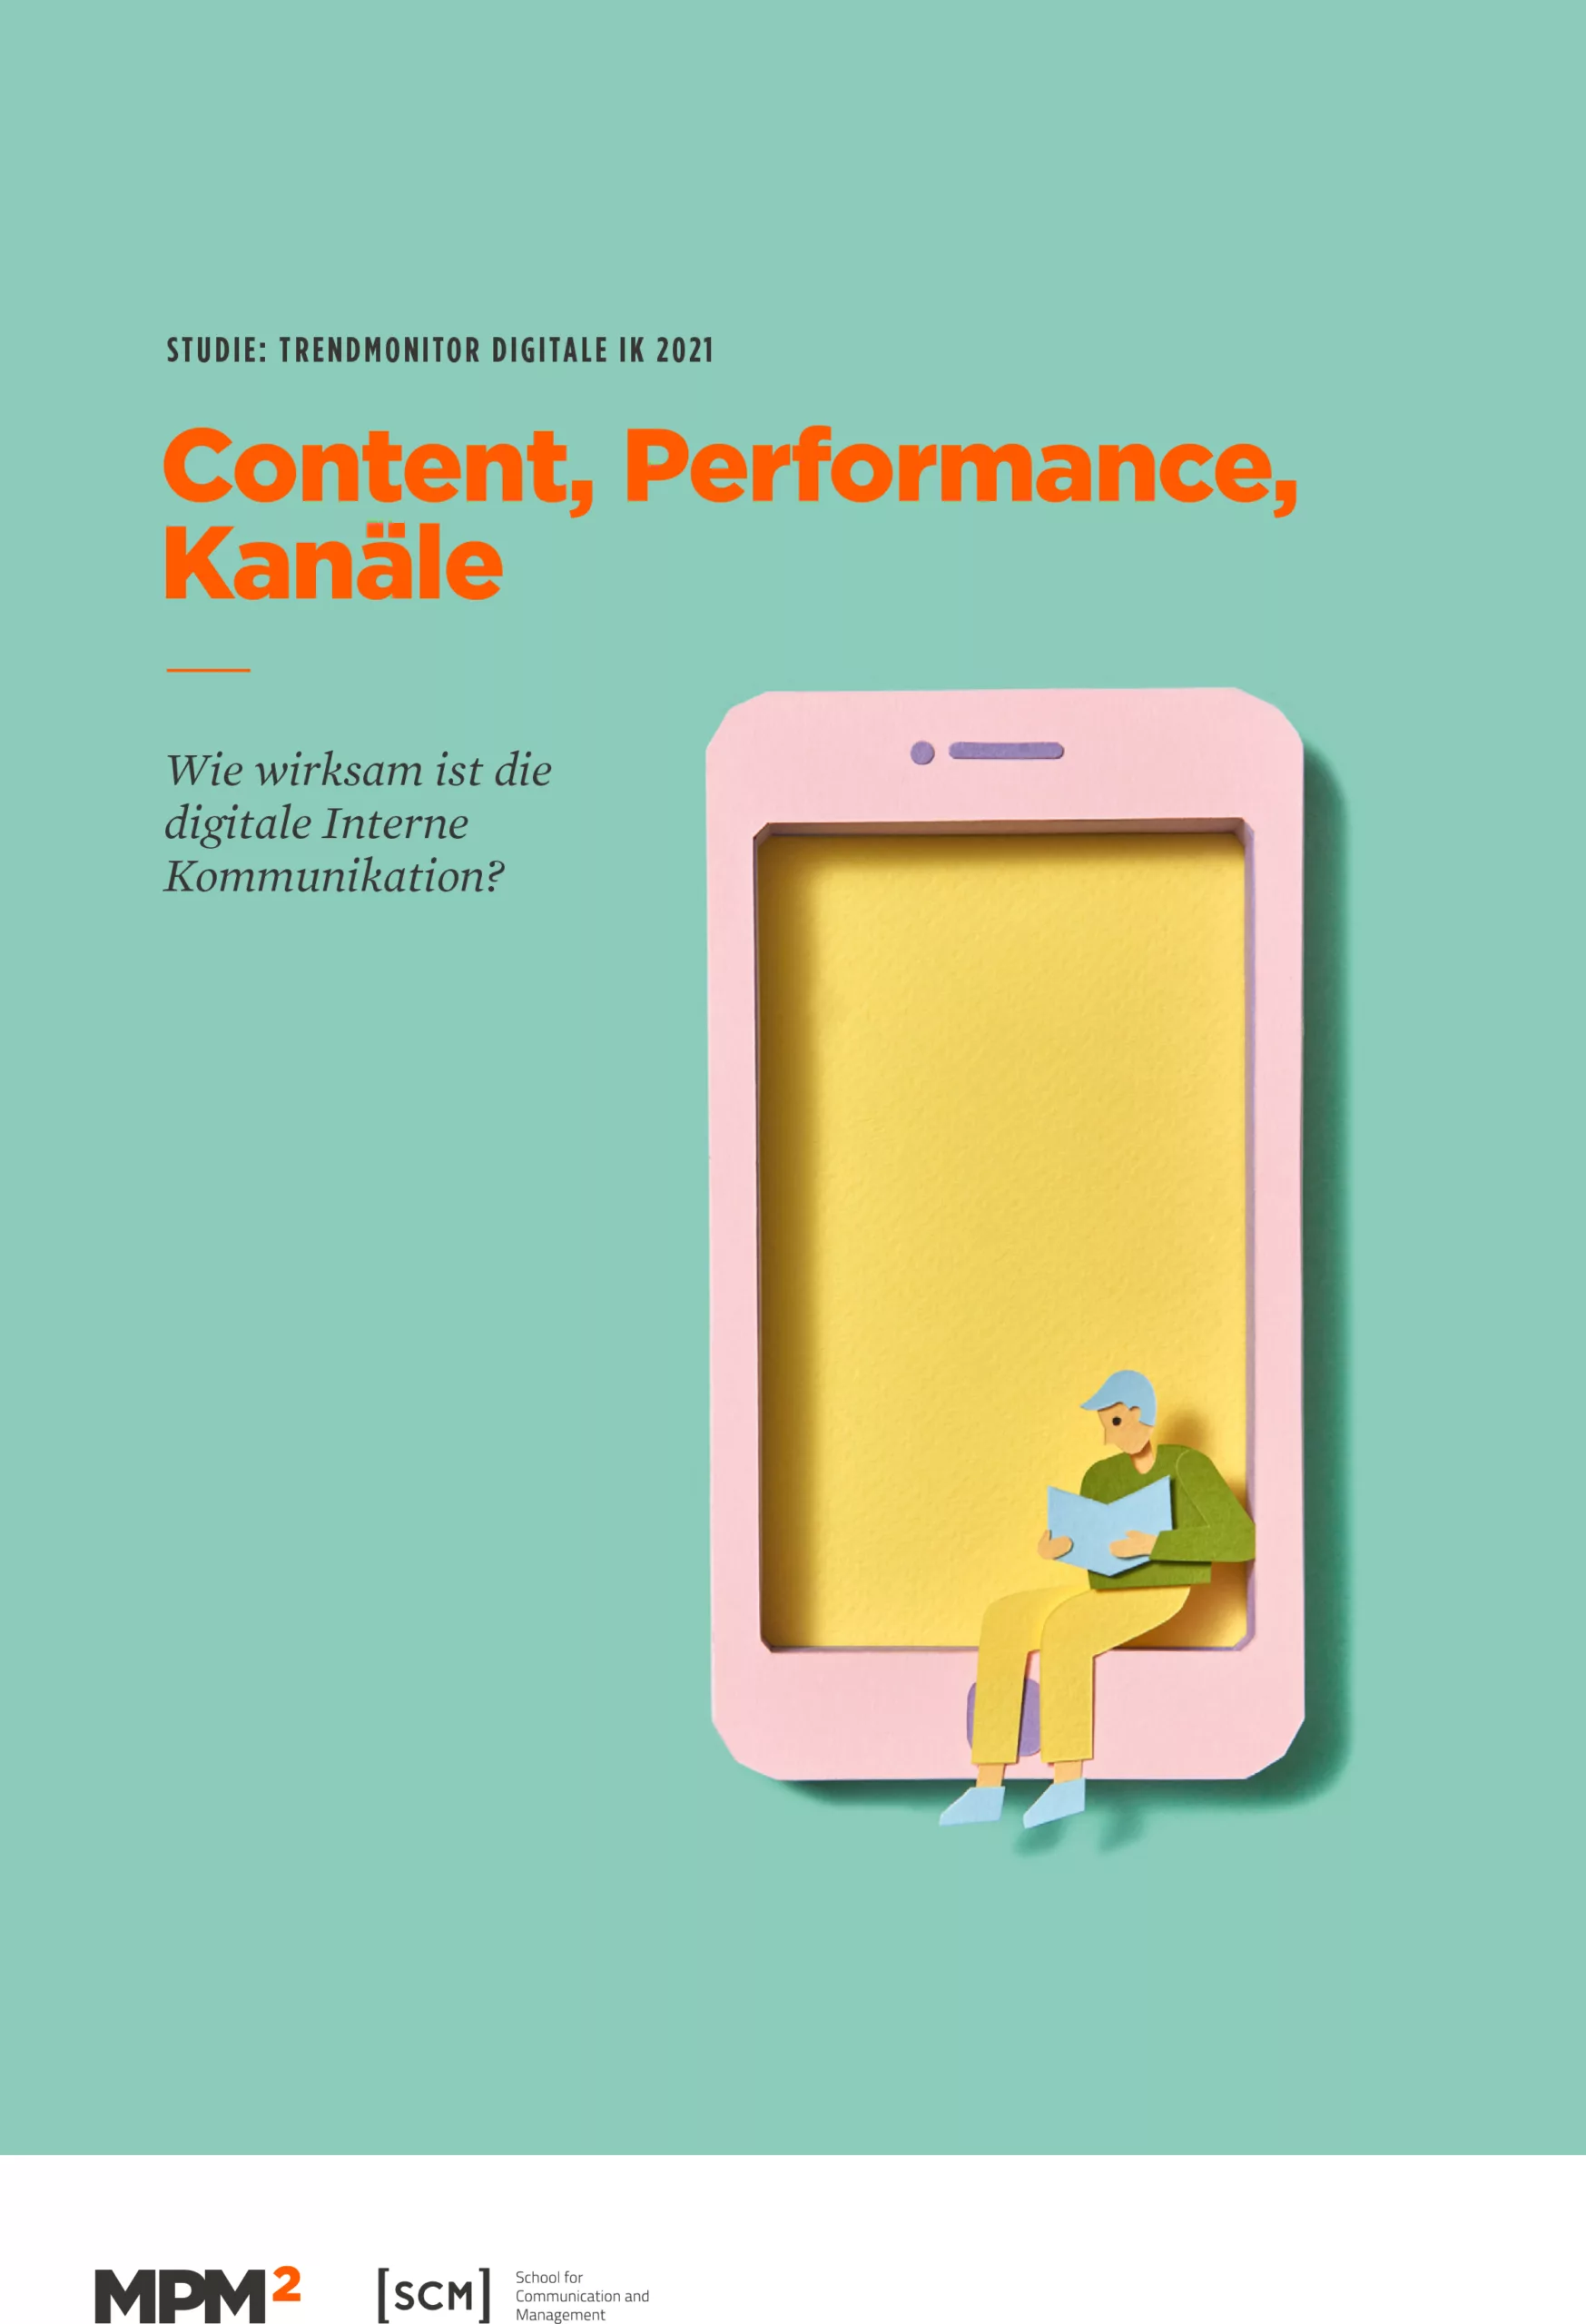 Trendmonitor digitale Interne Kommunikation 2021 – Content, Performance, Kanäle